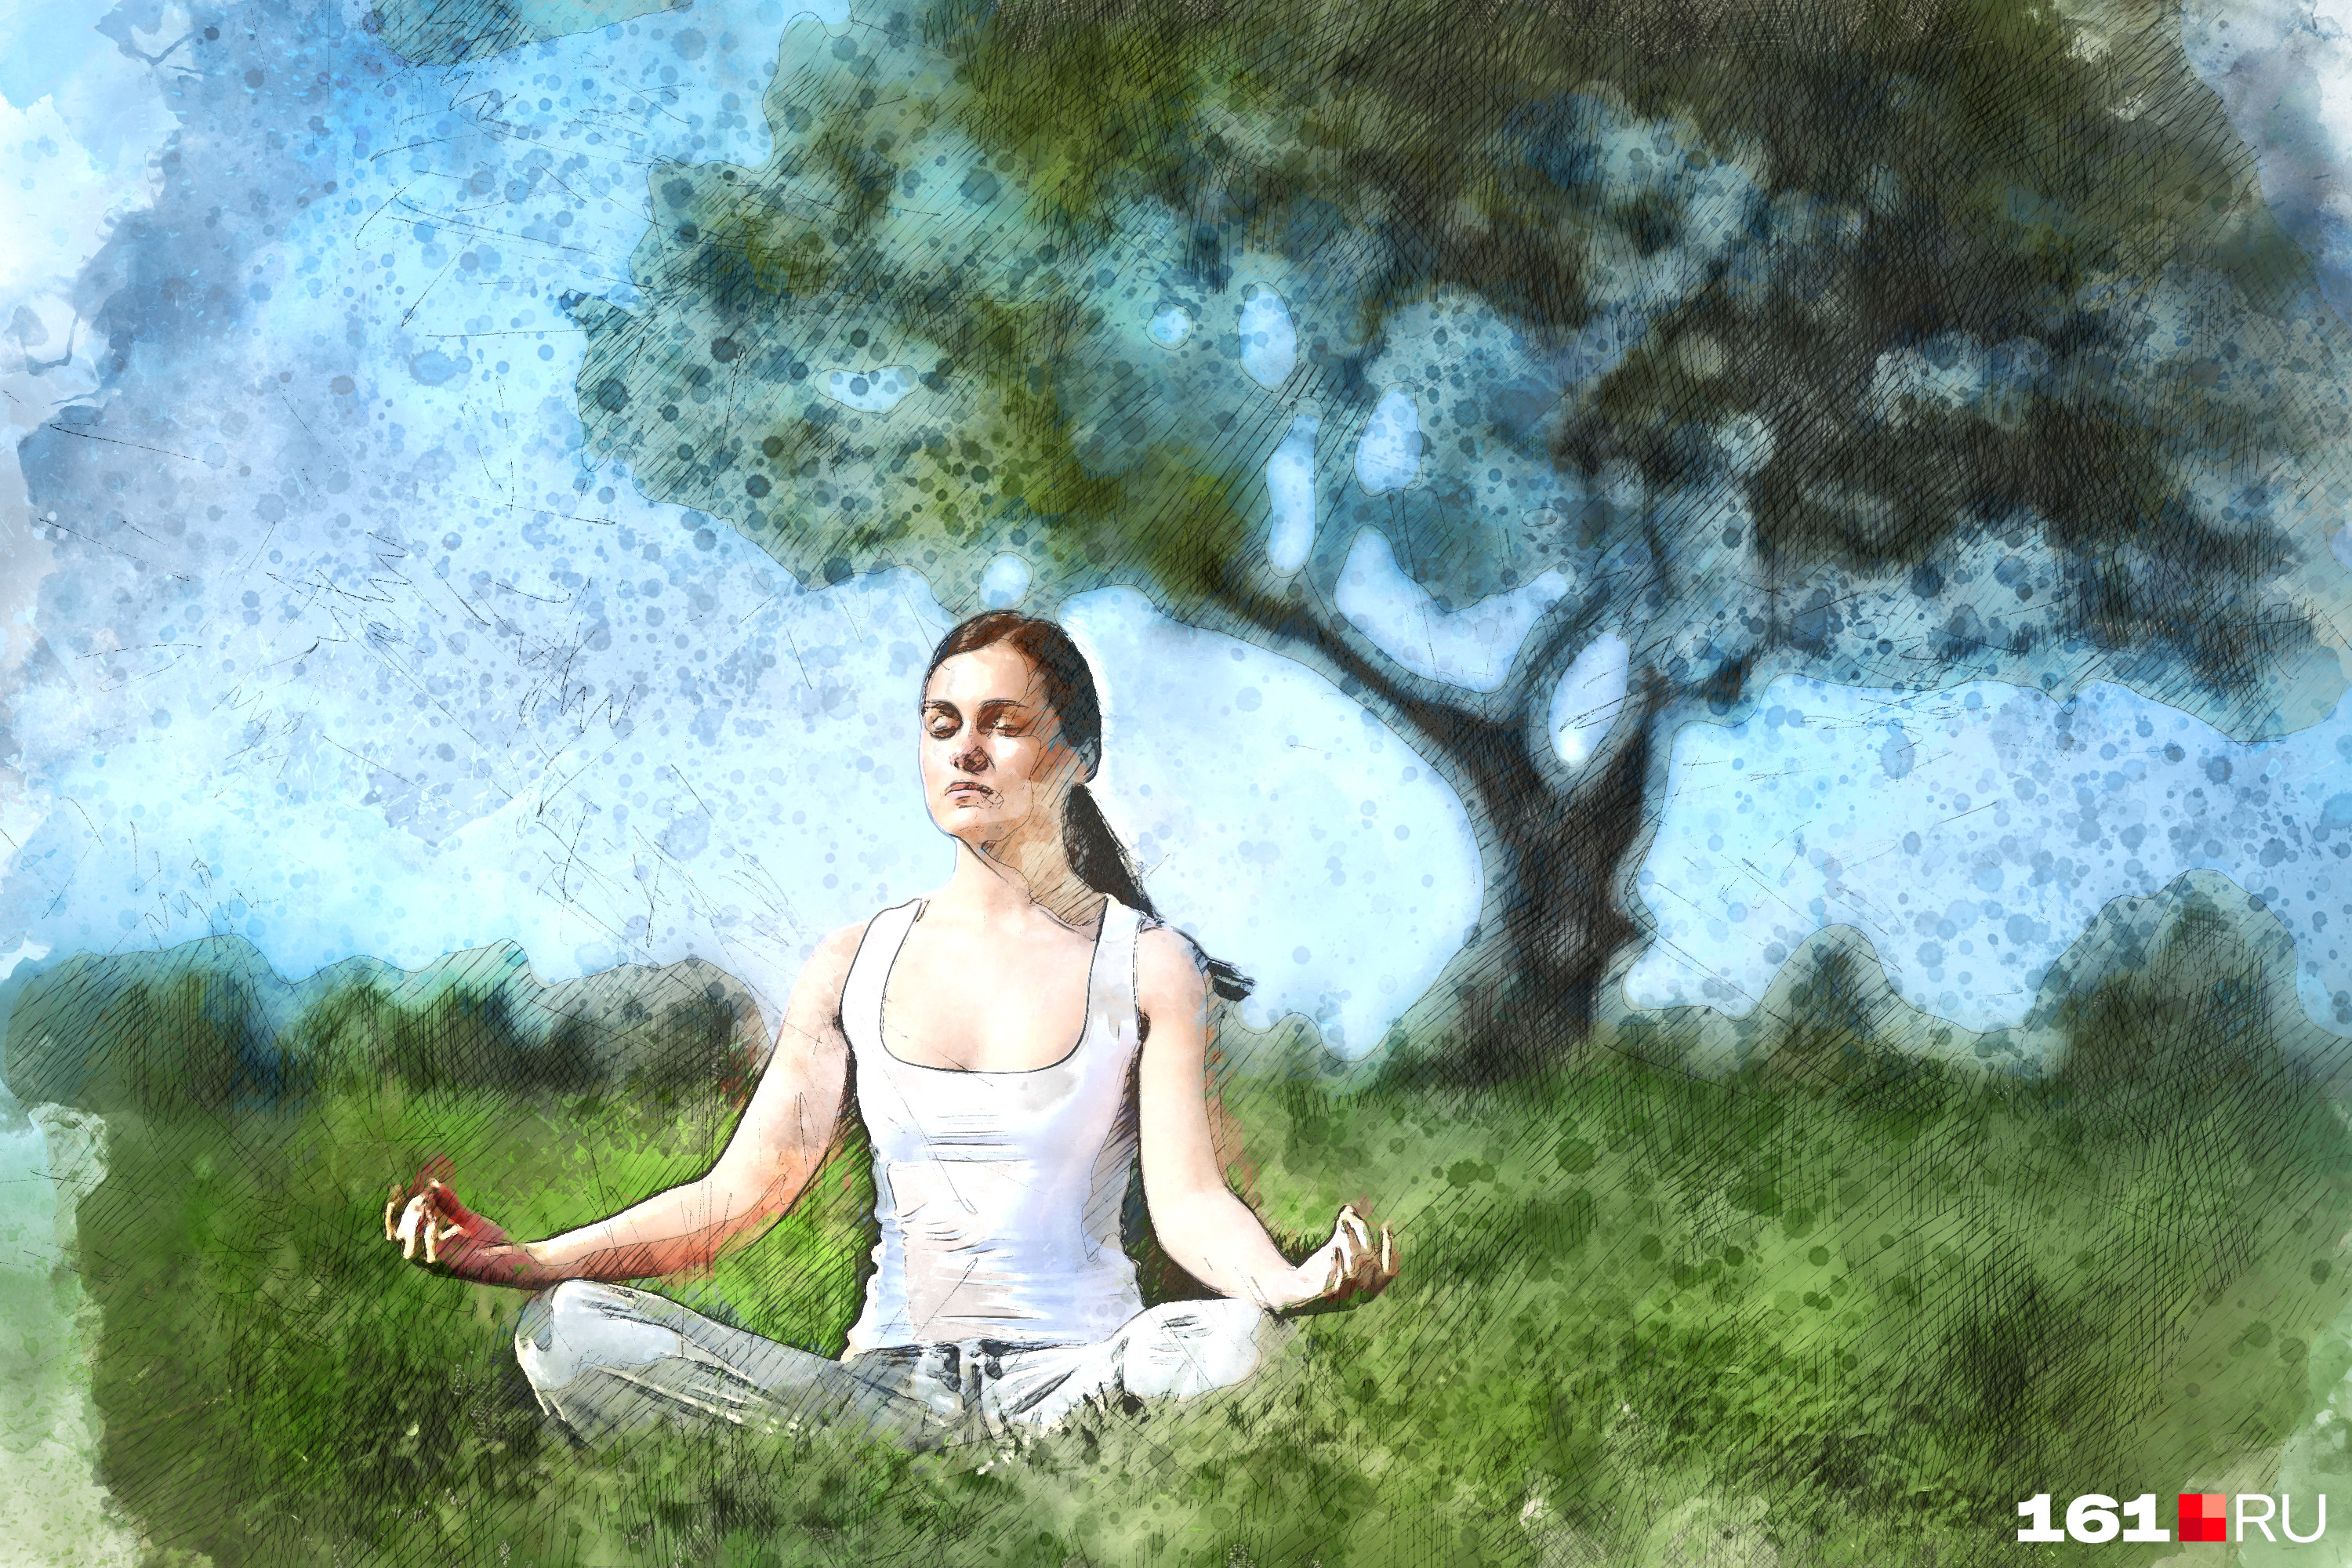 Медитация и отключения от информационного поля помогут избежать стресса